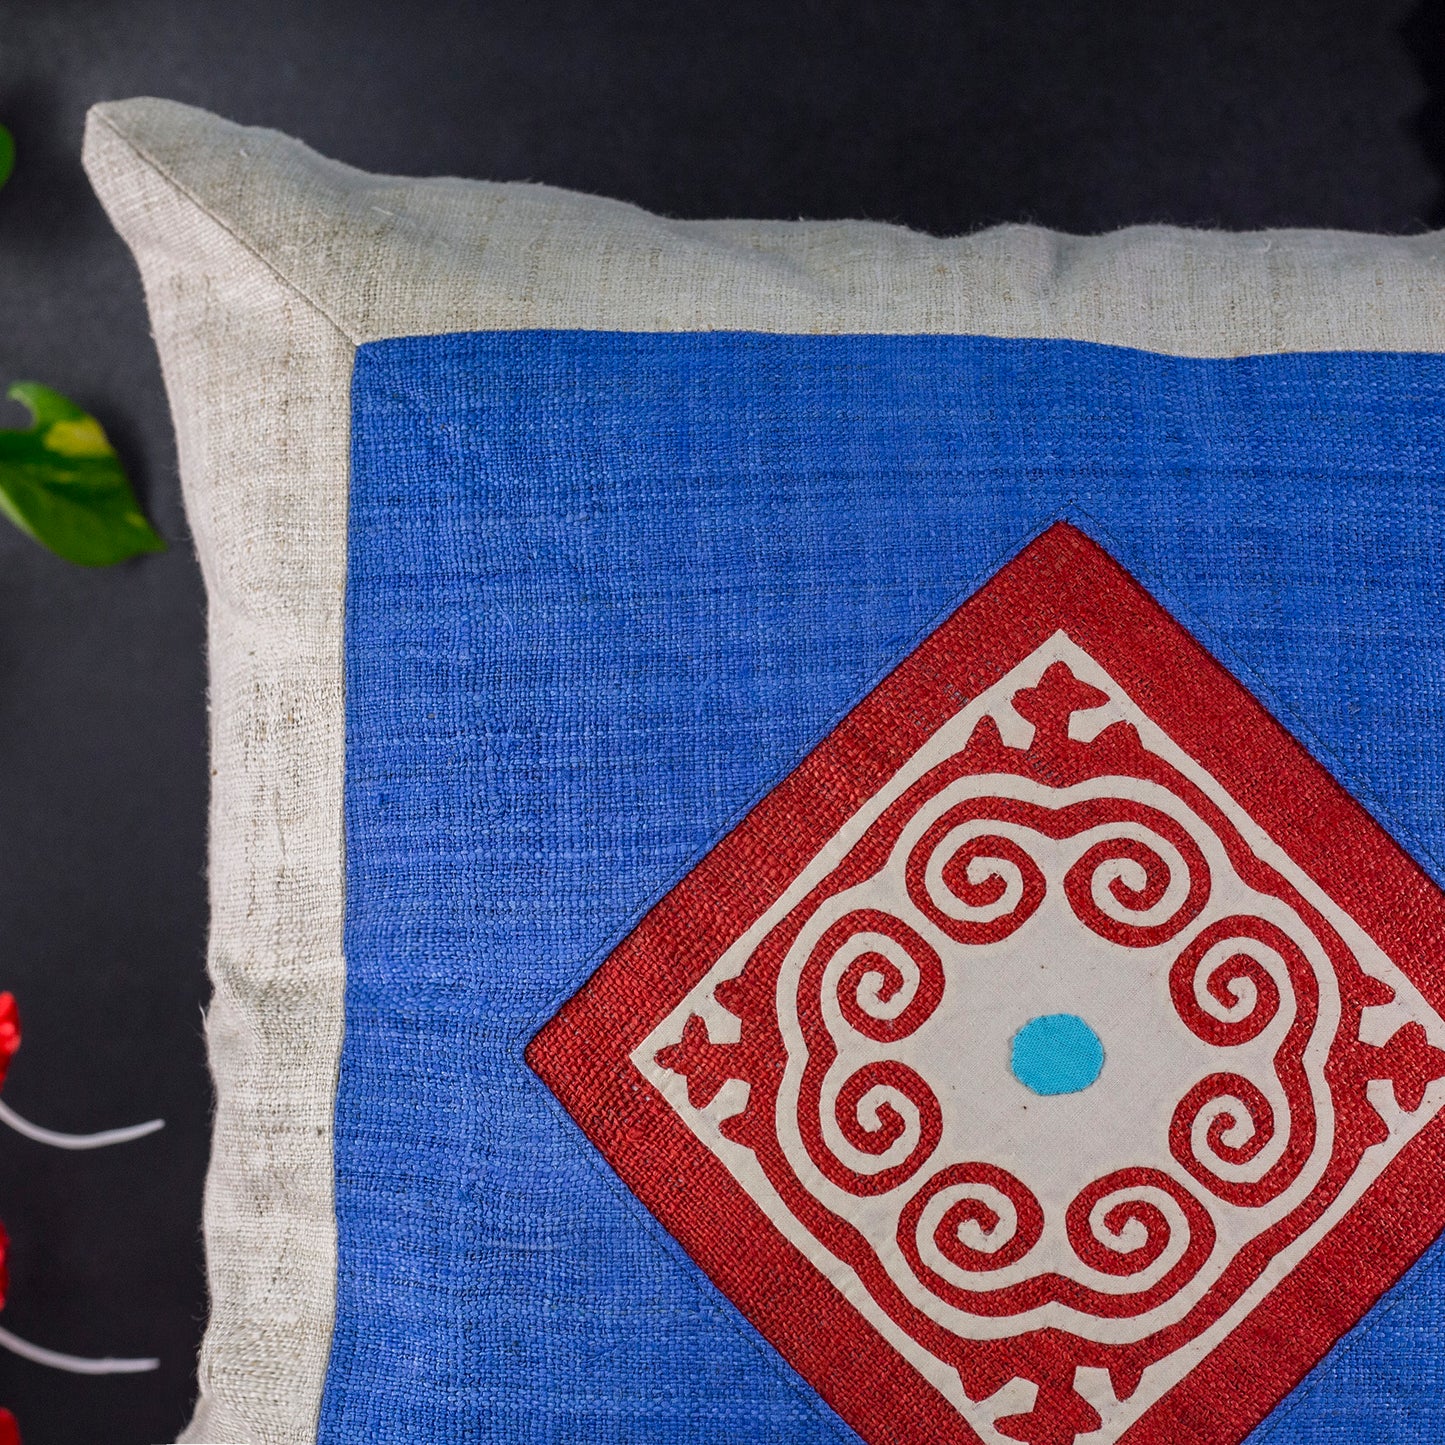 Hemp Cushion Cover - H'mong pattern, light blue hemp at center